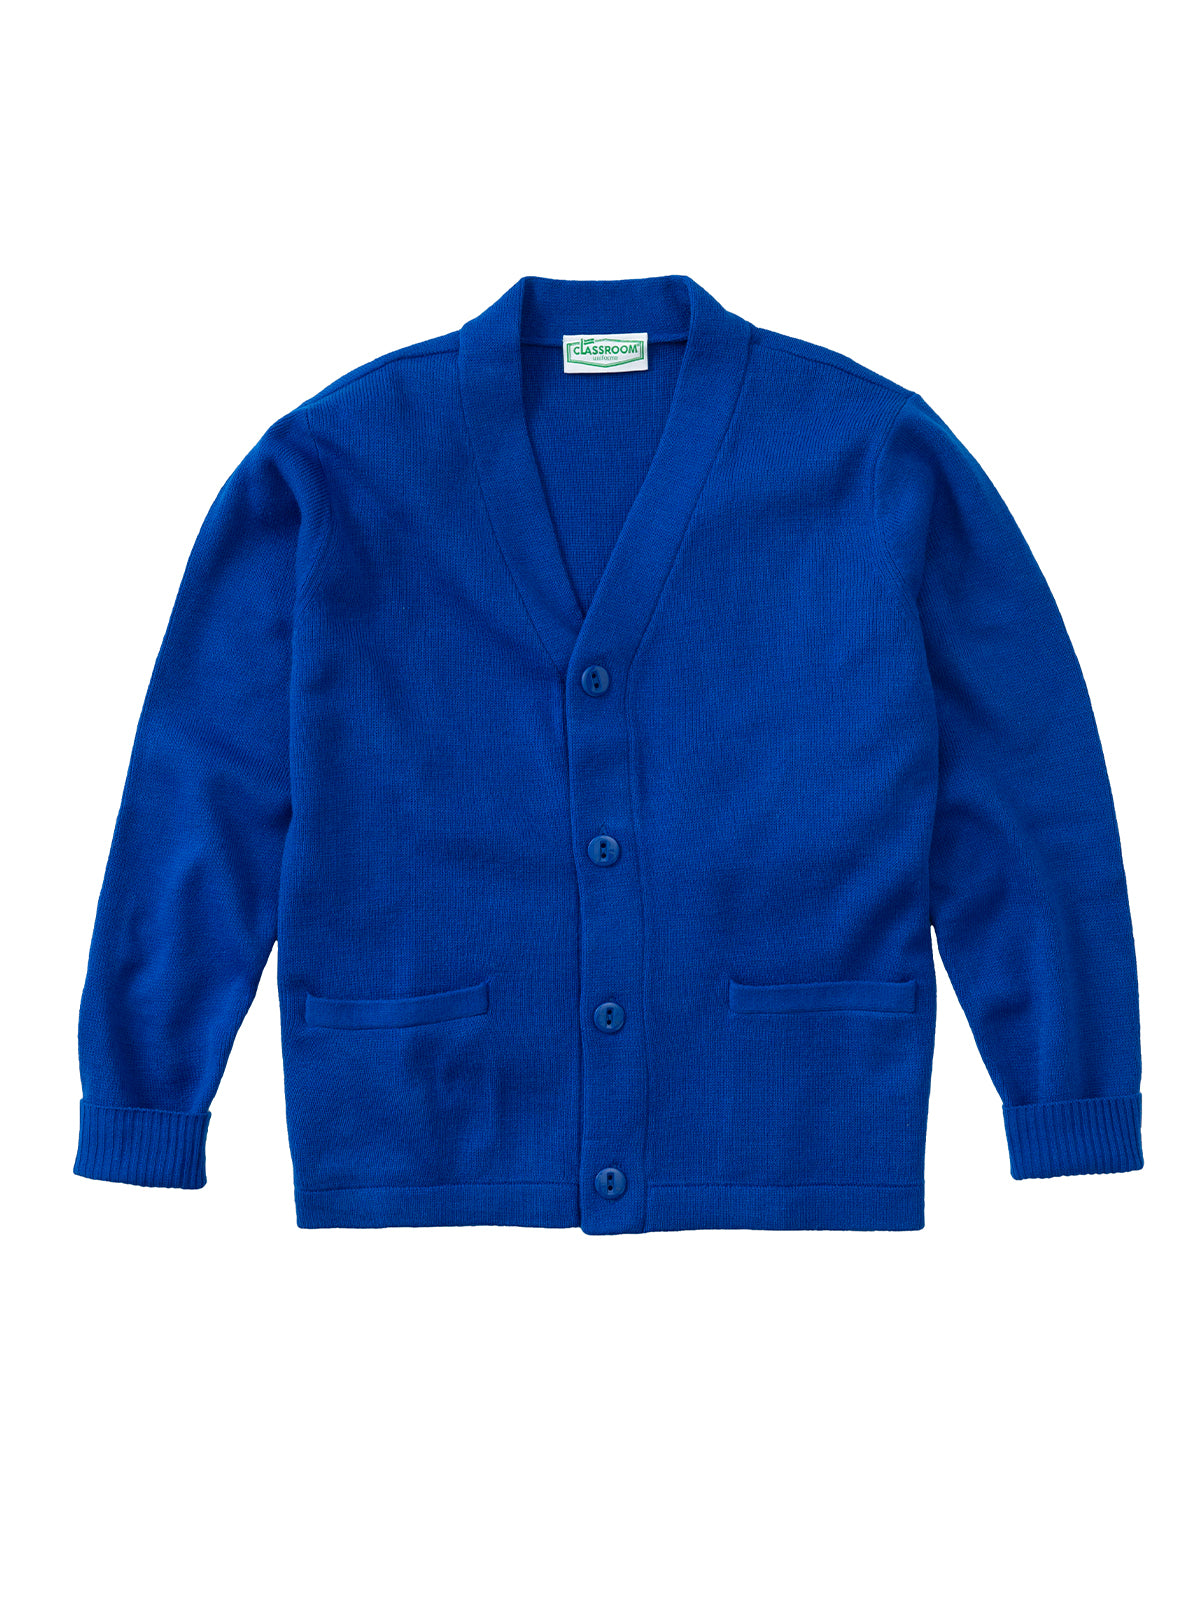 Youth Unisex Cardigan Sweater - 56432 - Royal